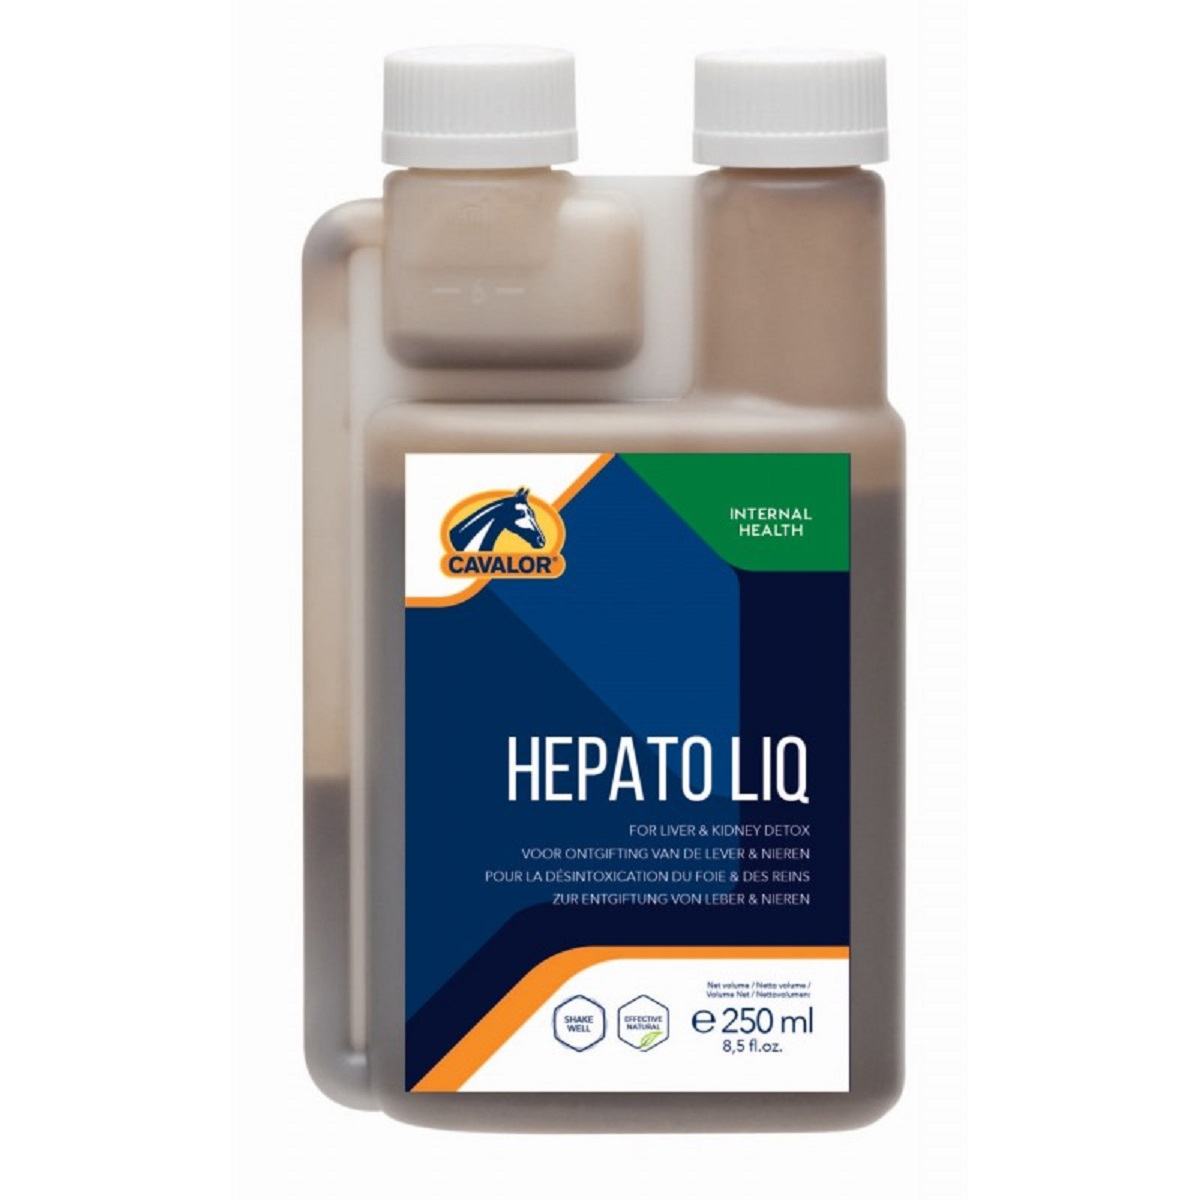 Cavalor Hepato Liq Restaura la función hepática y renal de los caballos